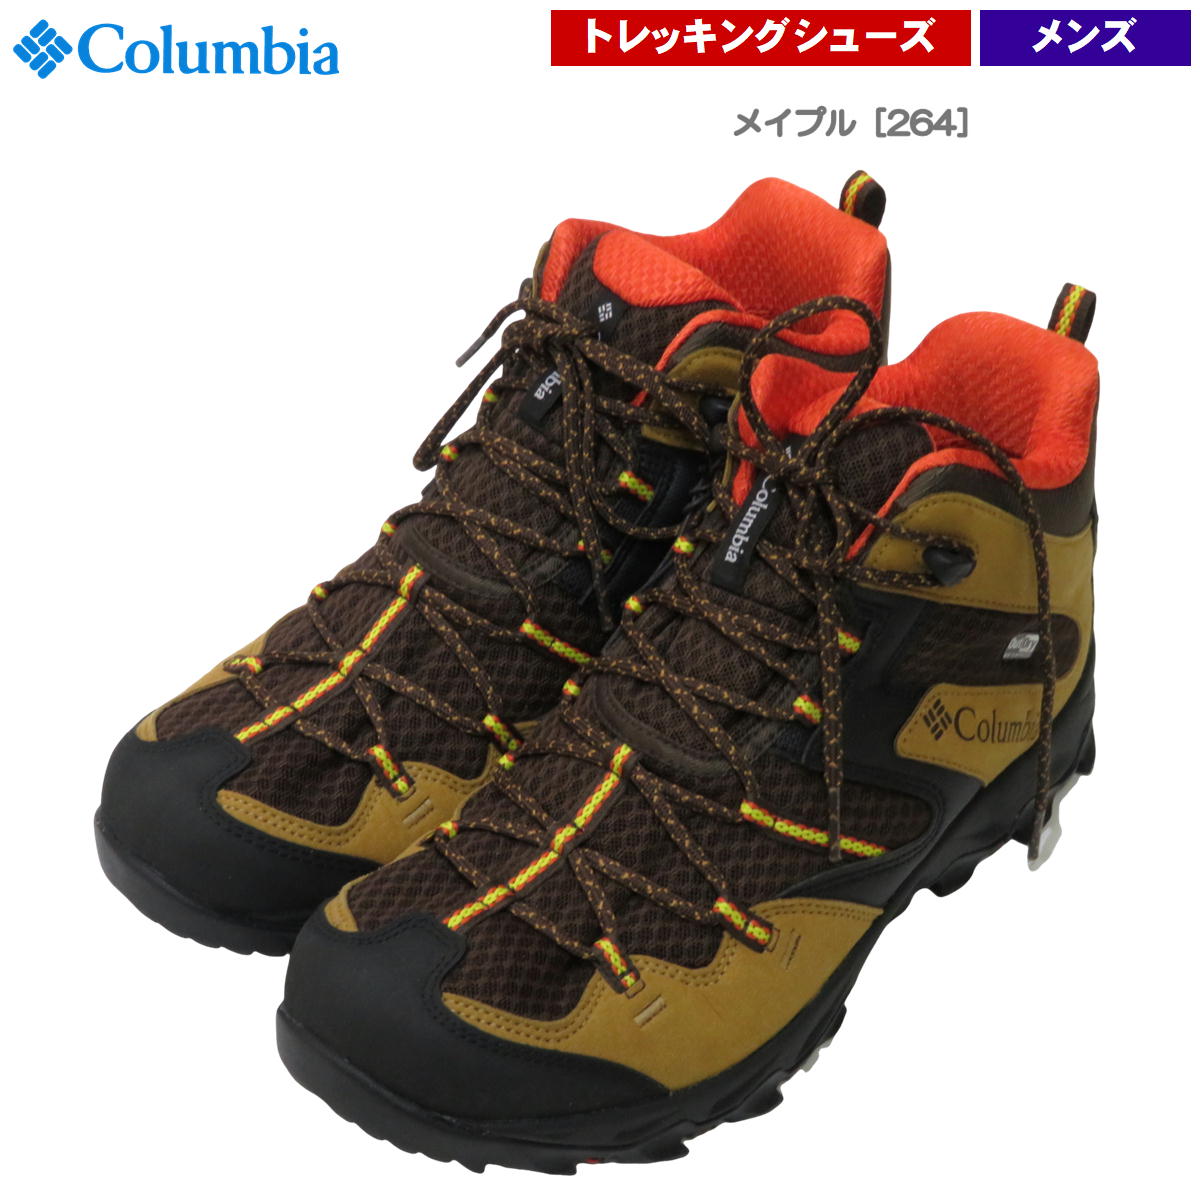 コロンビア / セイバー 4 ミッド メンズ ・ 防水 男性 登山 トレッキング ハイキング ブランド おしゃれ アウトドア Columbia